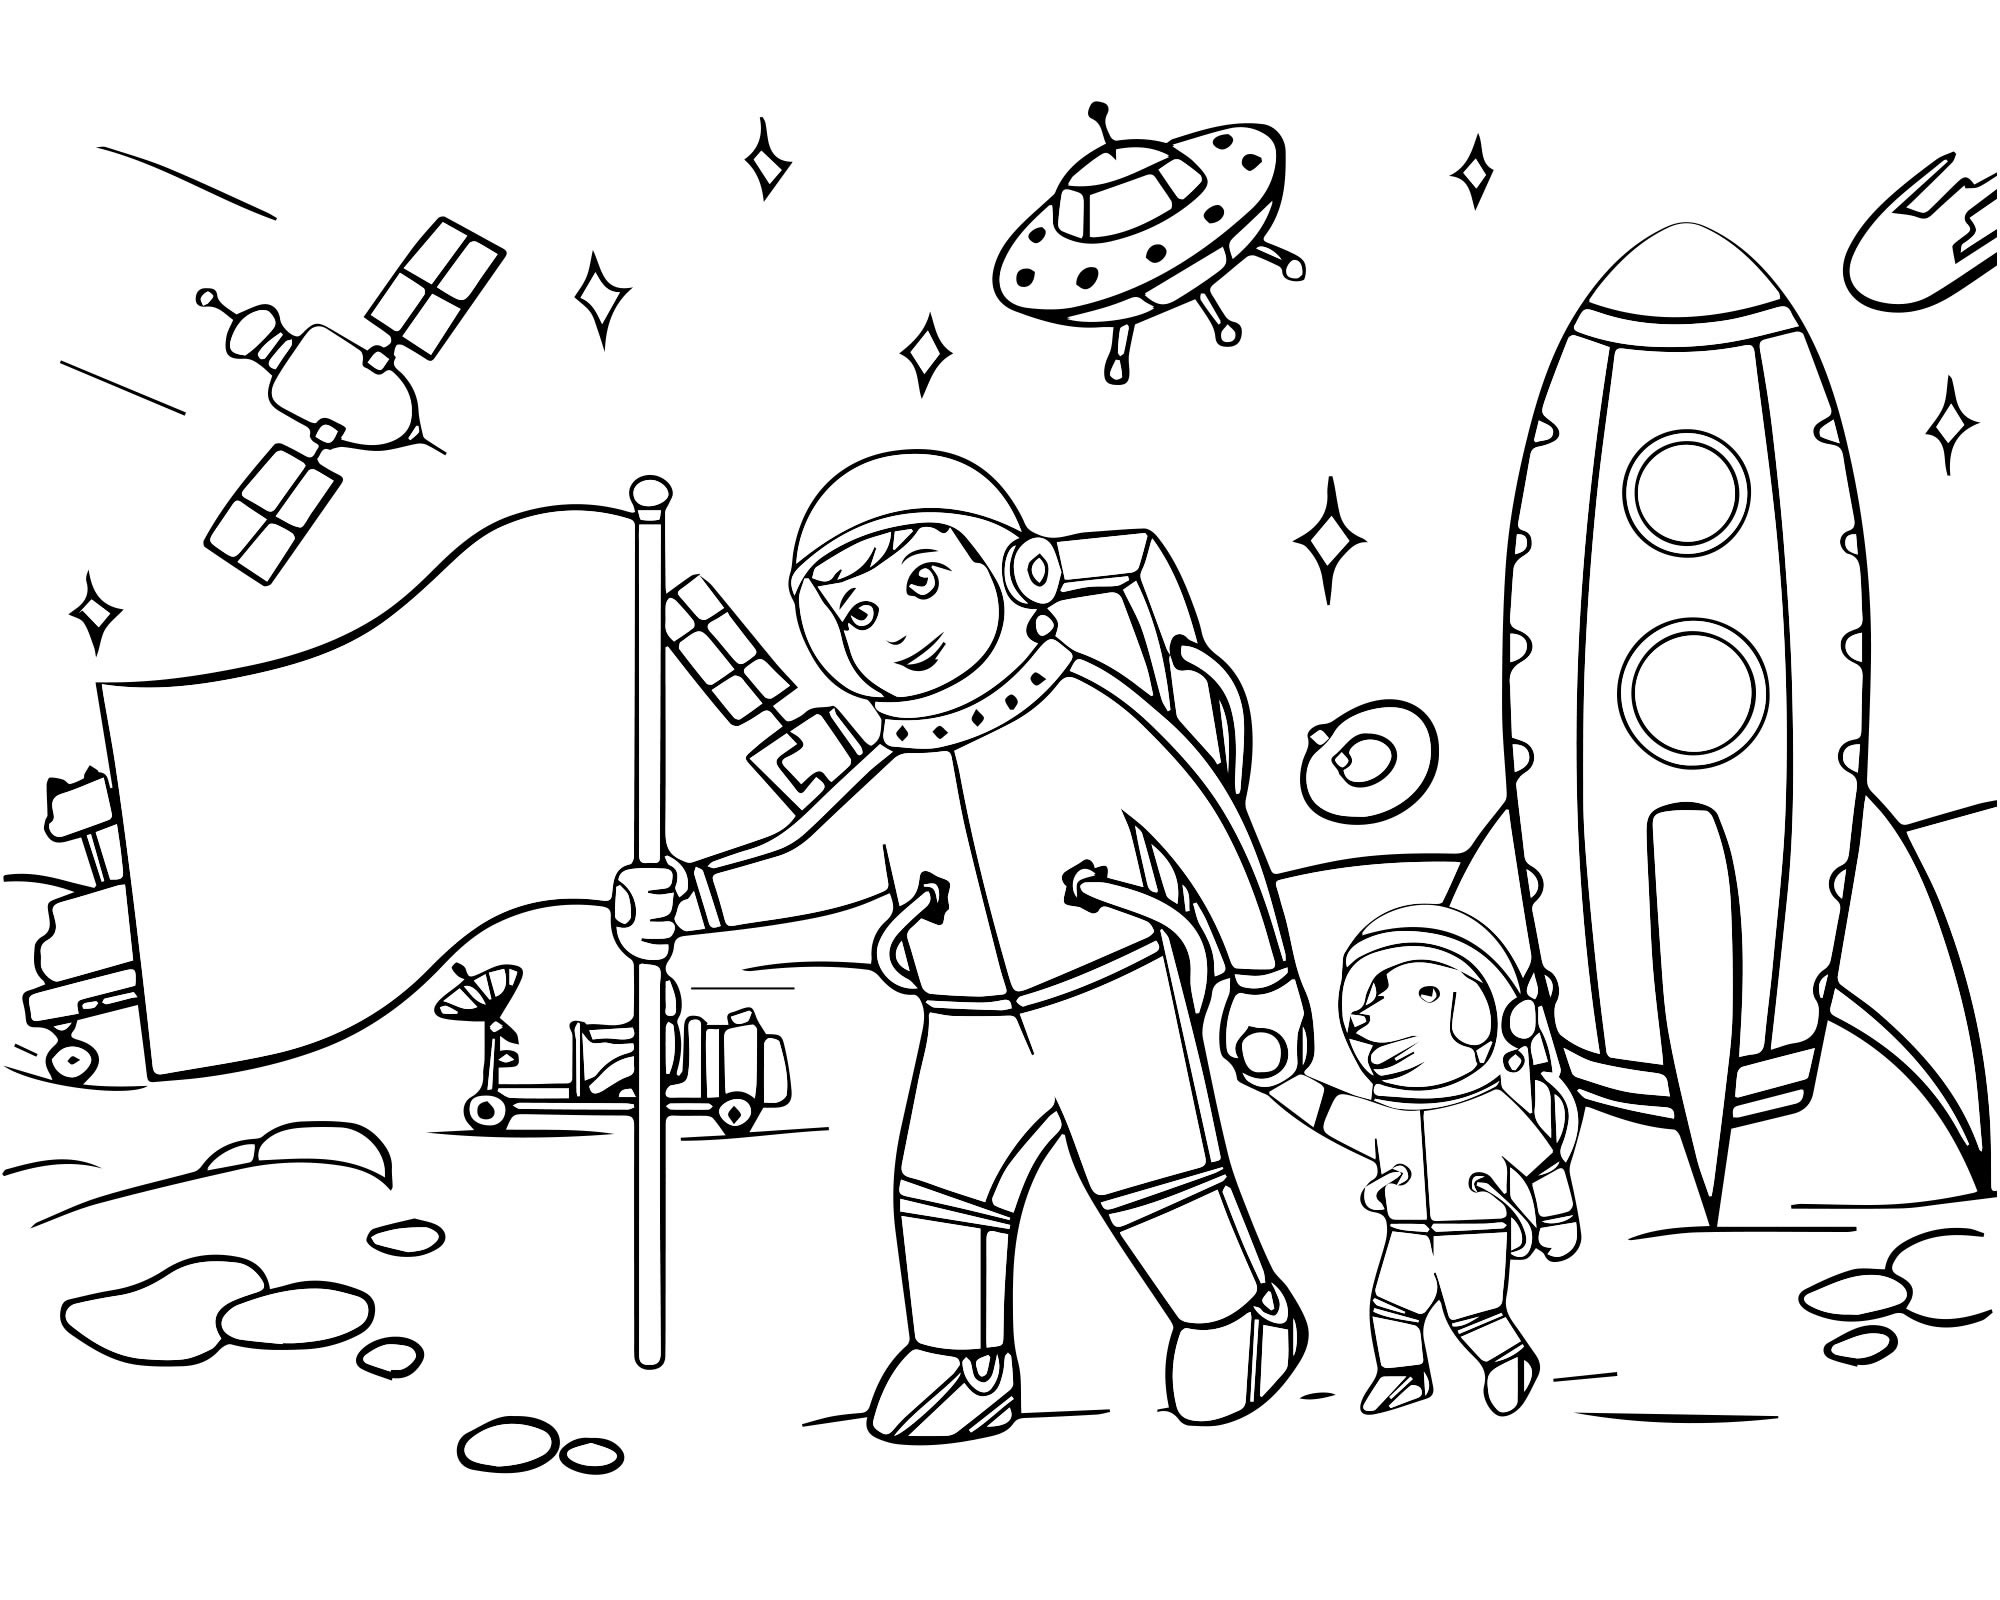 Раскраски 12 апреля день космонавтики для детей. Раскраска. В космосе. Космос раскраска для детей. Раскраска день космонавтики для детей. Космические раскраски для детей.